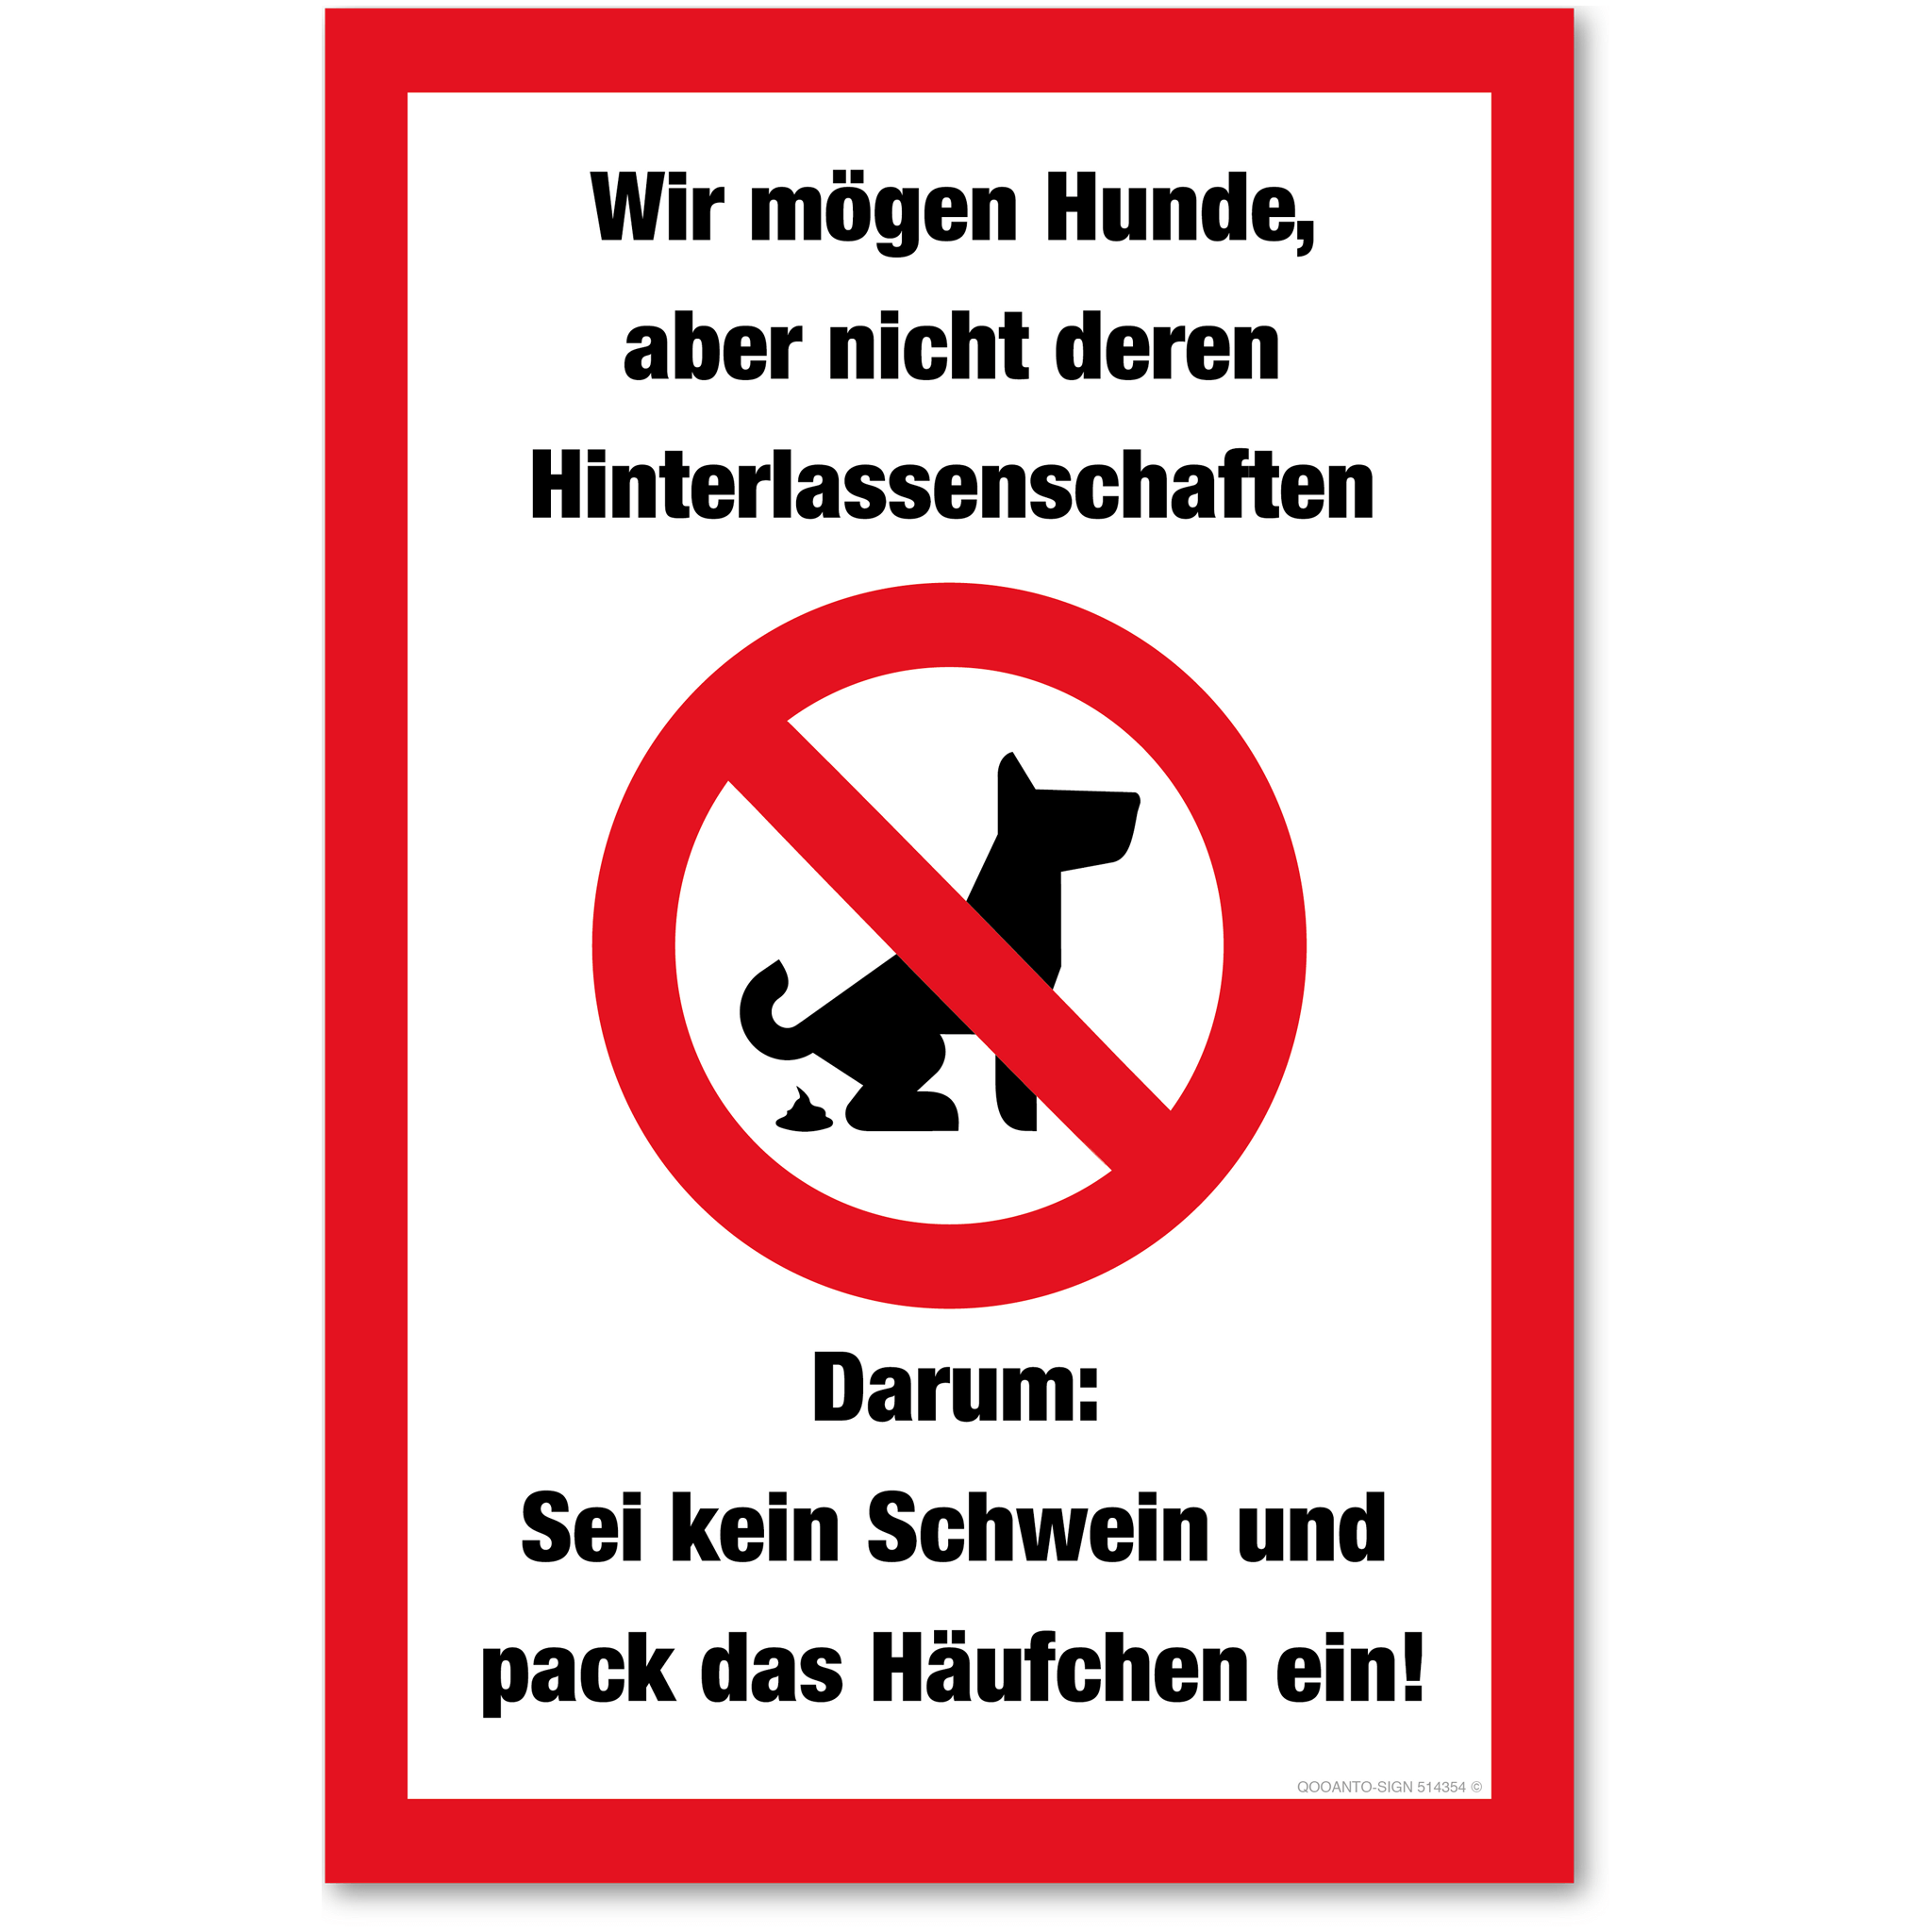 Wir mögen Hunde, aber nicht deren Hinterlassenschaften - Darum: Sei kein Schweiz und pack das Häufchen ein! - Tierschild